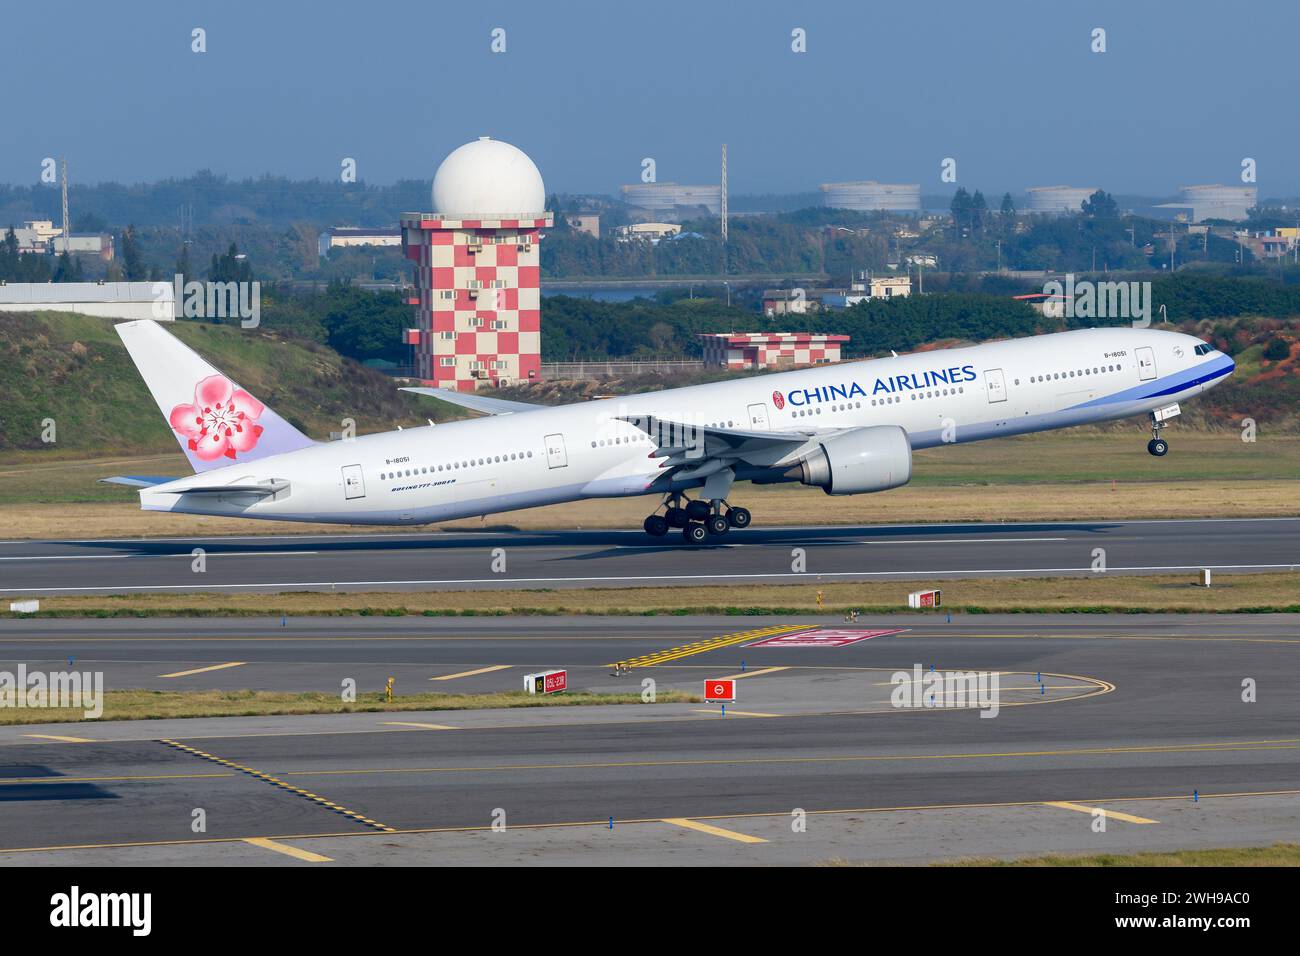 L'avion Boeing 777-300ER de Chila Airlines décolle. Boeing 777 de China Airlines au départ de Taiwan. Avion 77W. Banque D'Images